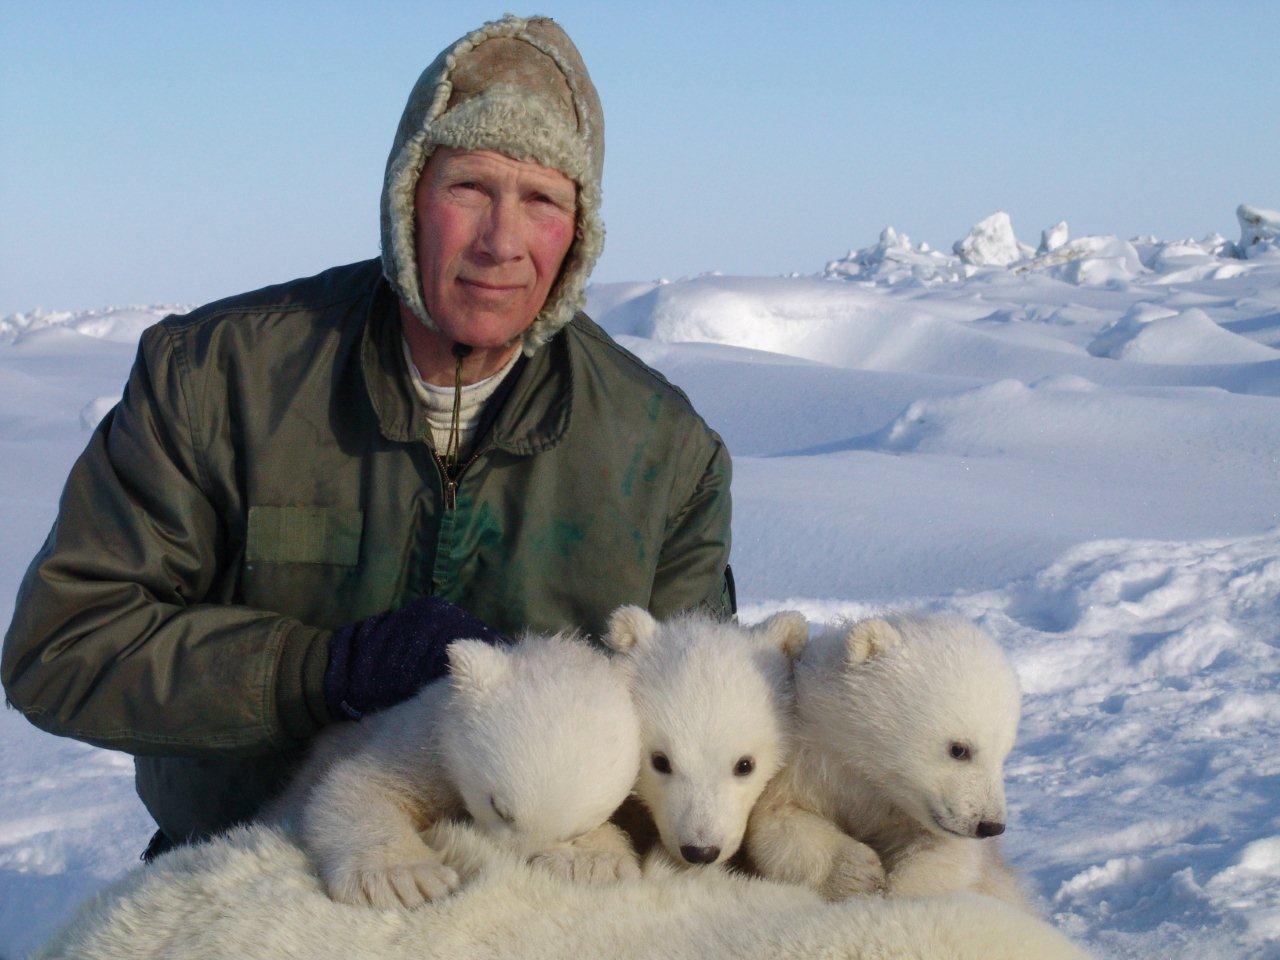 Steve Amstrup with polar bear cub